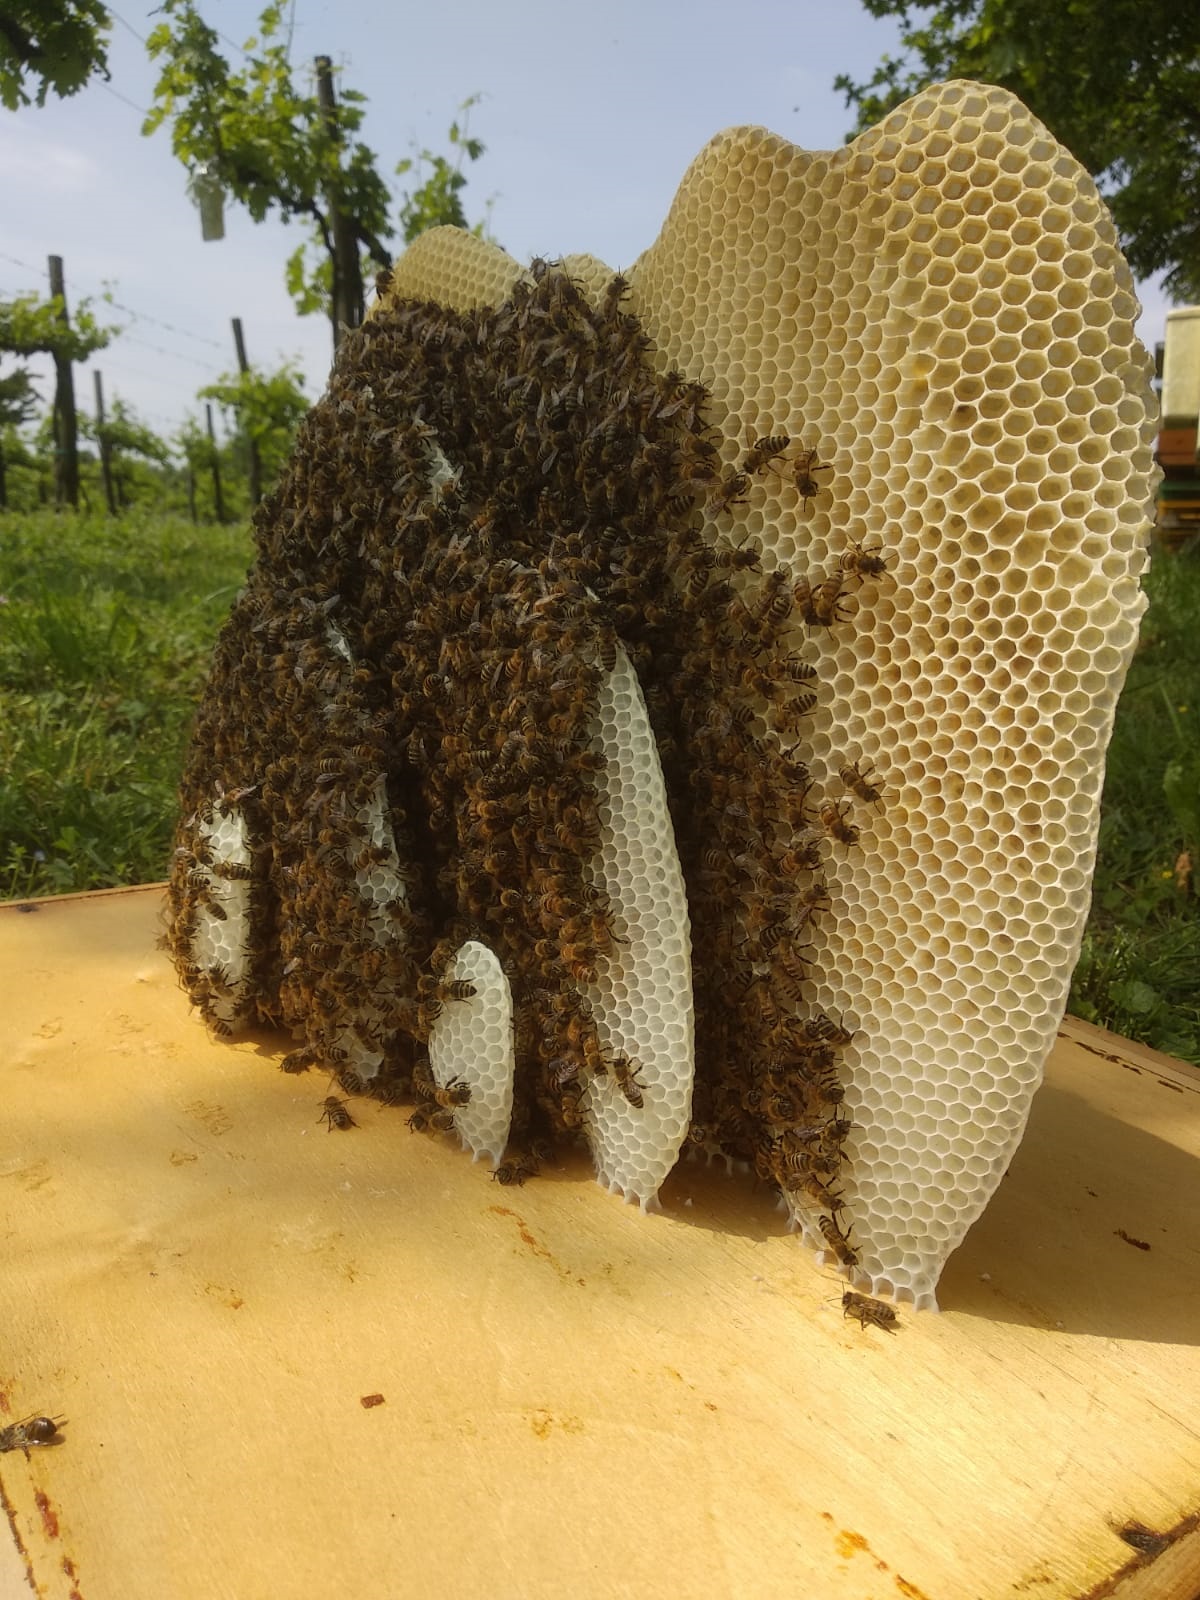 Favi costruiti naturalmente dalle api, come una creazione artistica